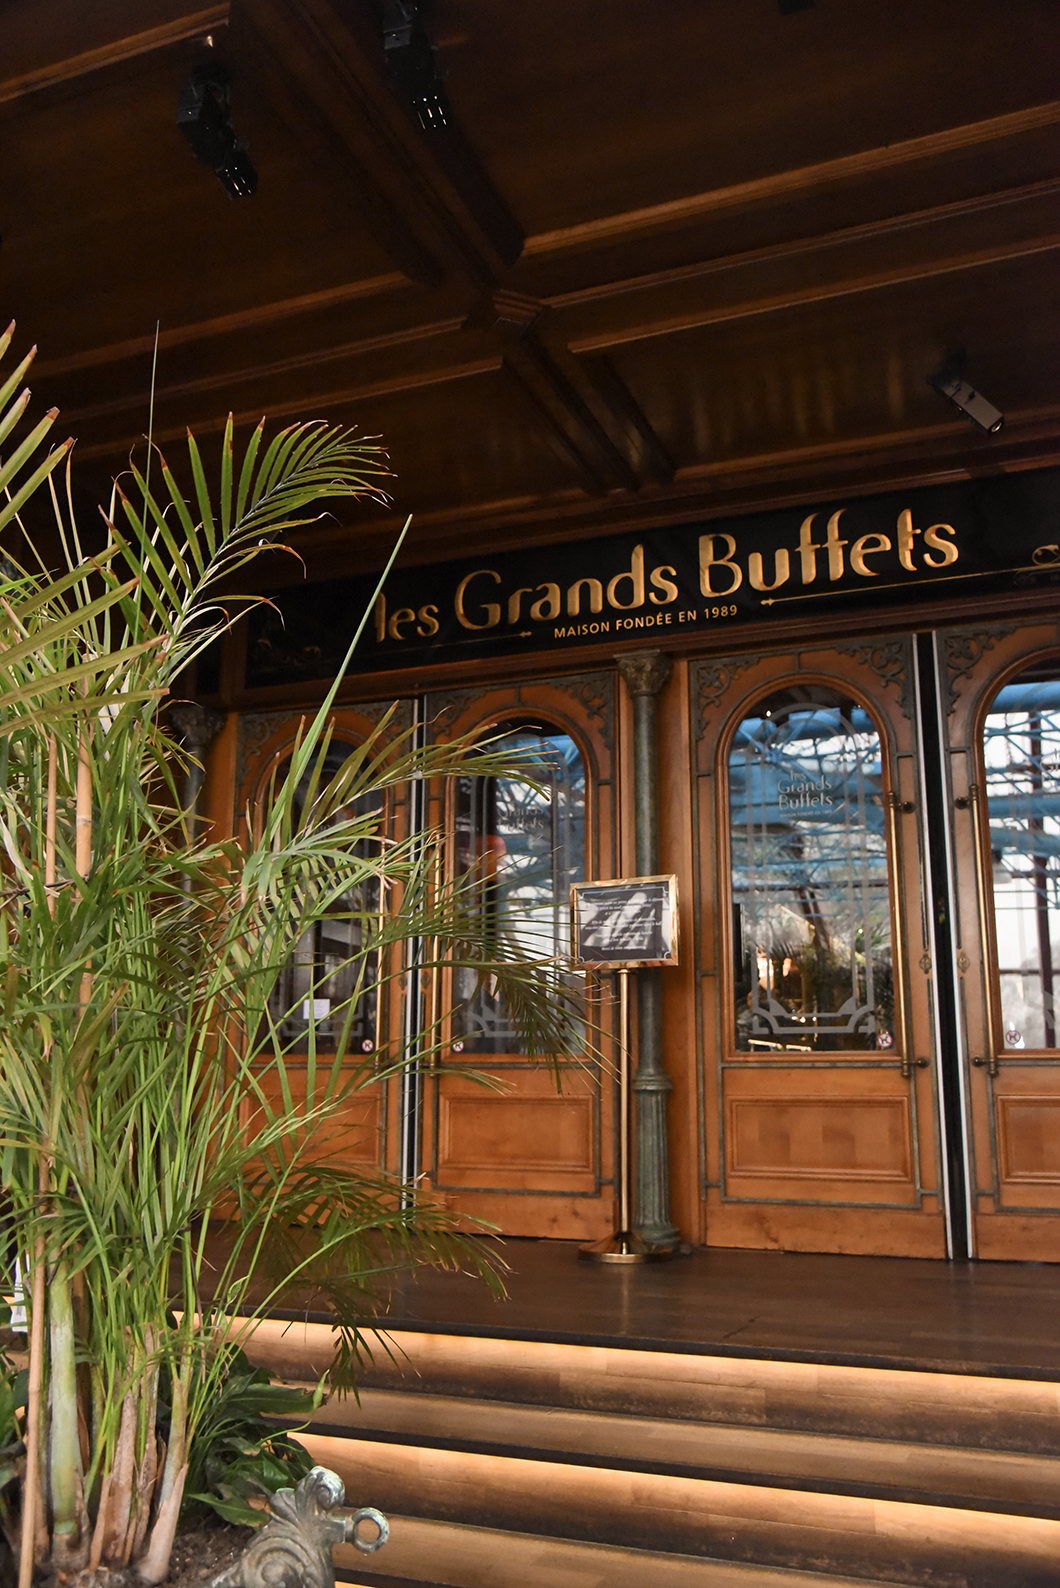 Les Grands Buffets à Narbonne - Buffet à volonté de qualité